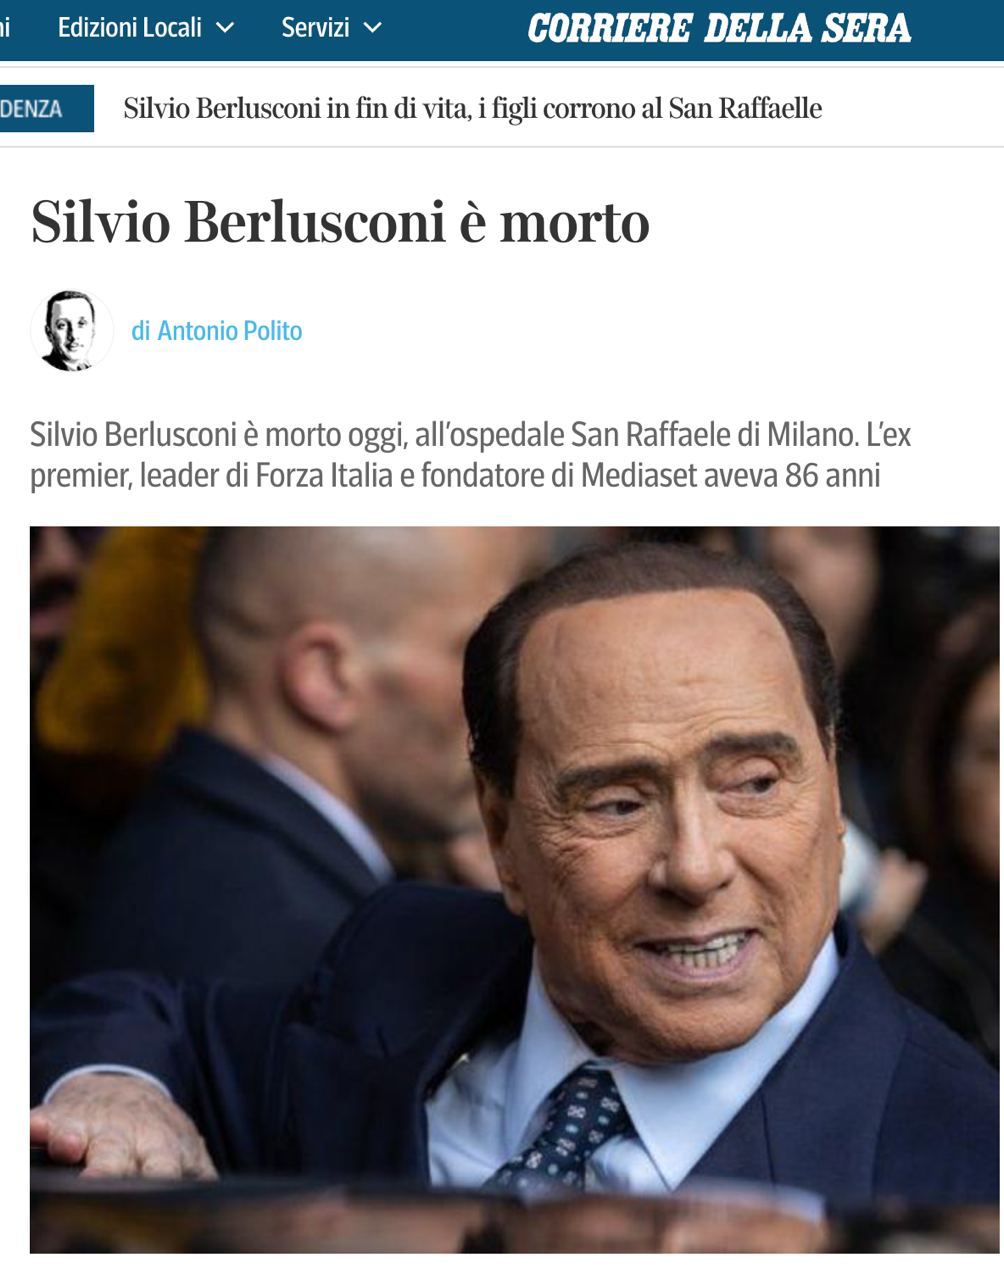 Президент италии берлускони